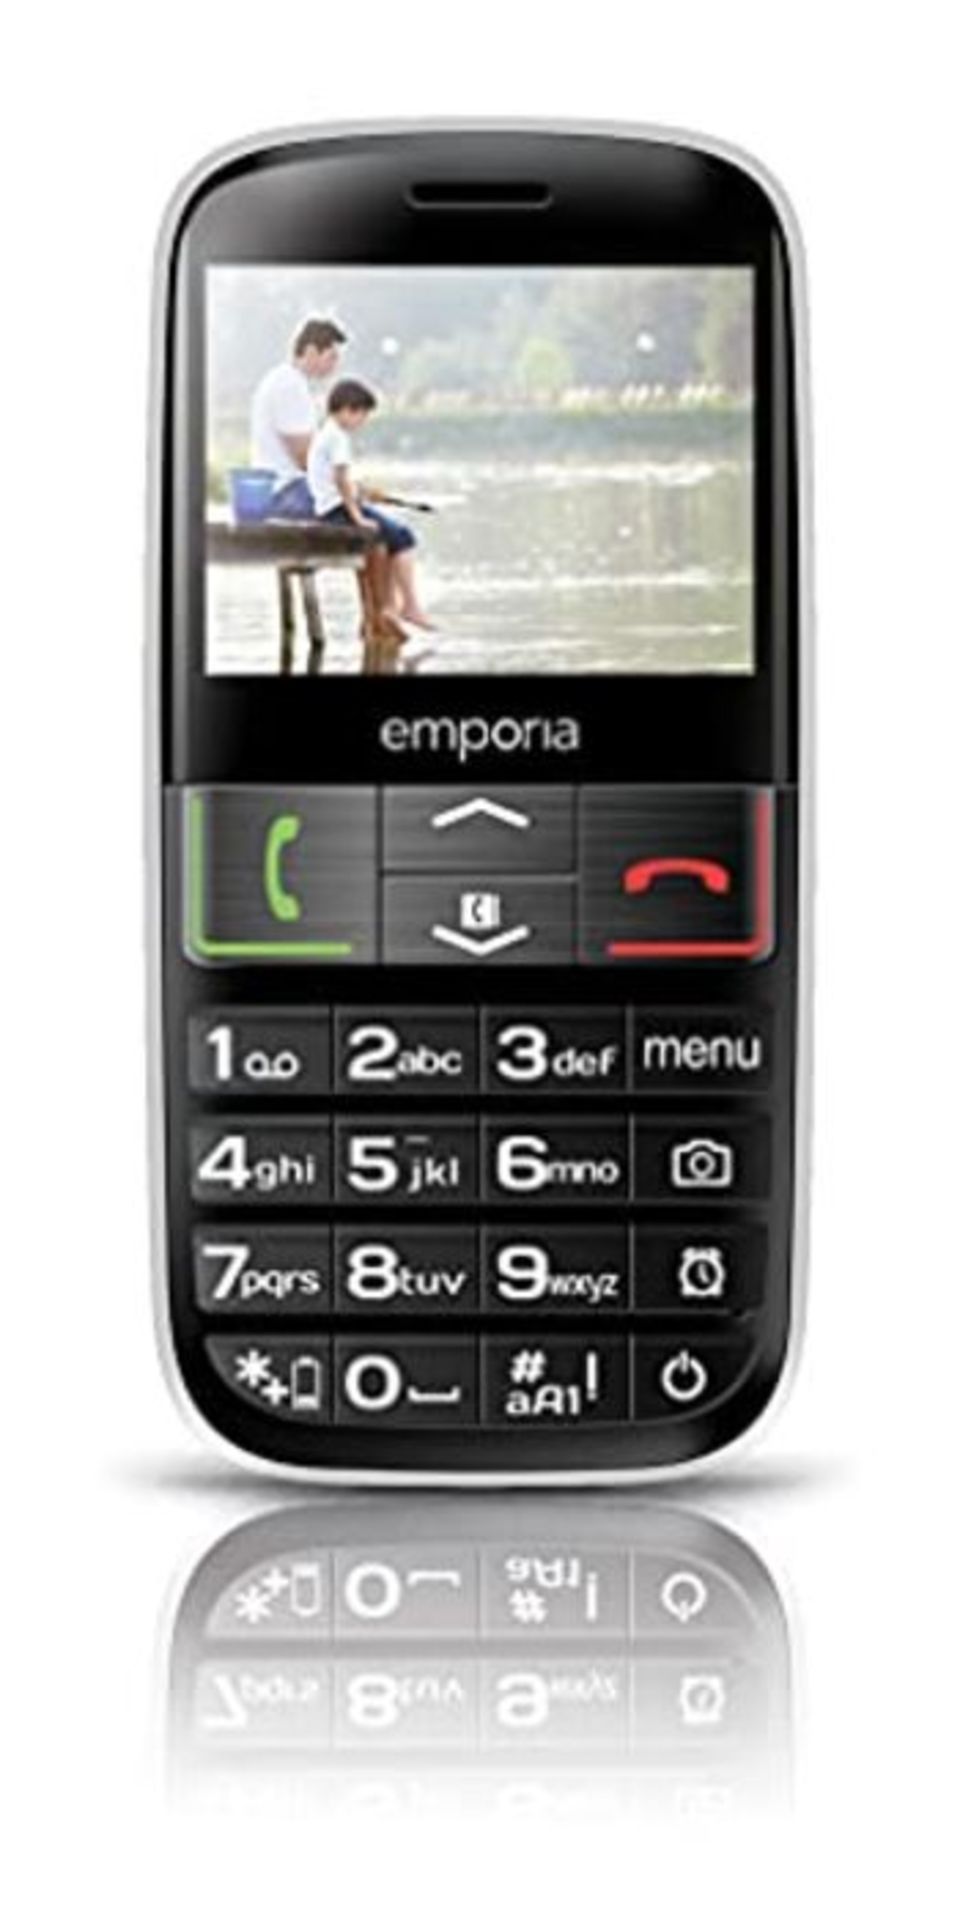 RRP £52.00 Emporia EUPHORIA 2.3" 90g Black, Silver - mobile phones (Single SIM, MiniSIM, Alarm cl